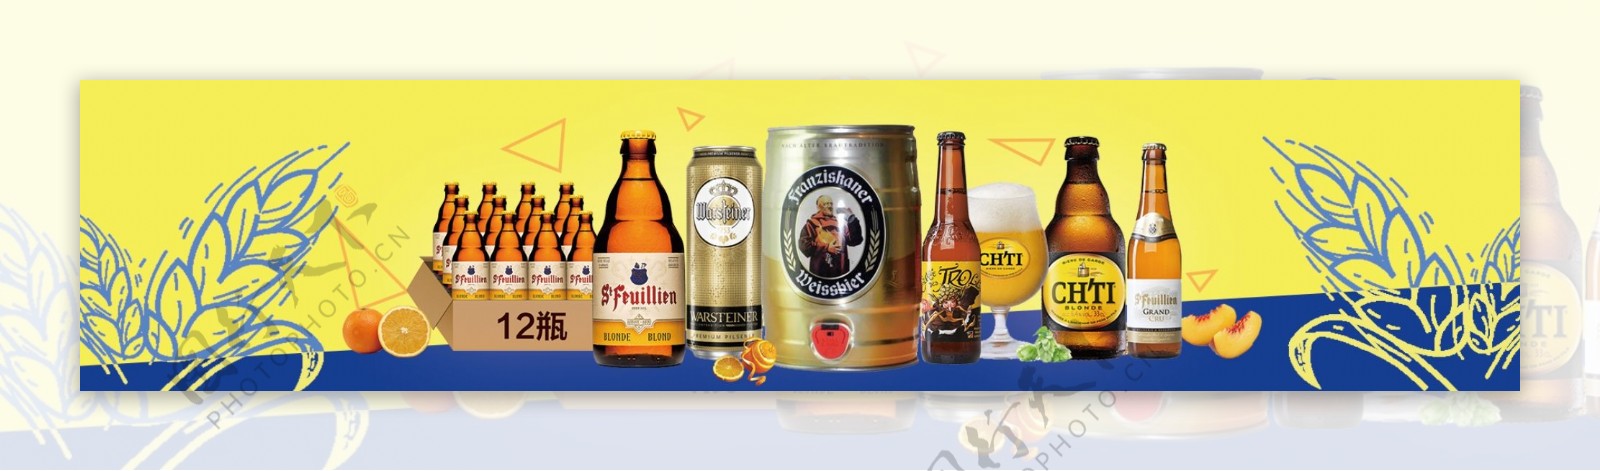 啤酒食品类产品宣传图psd